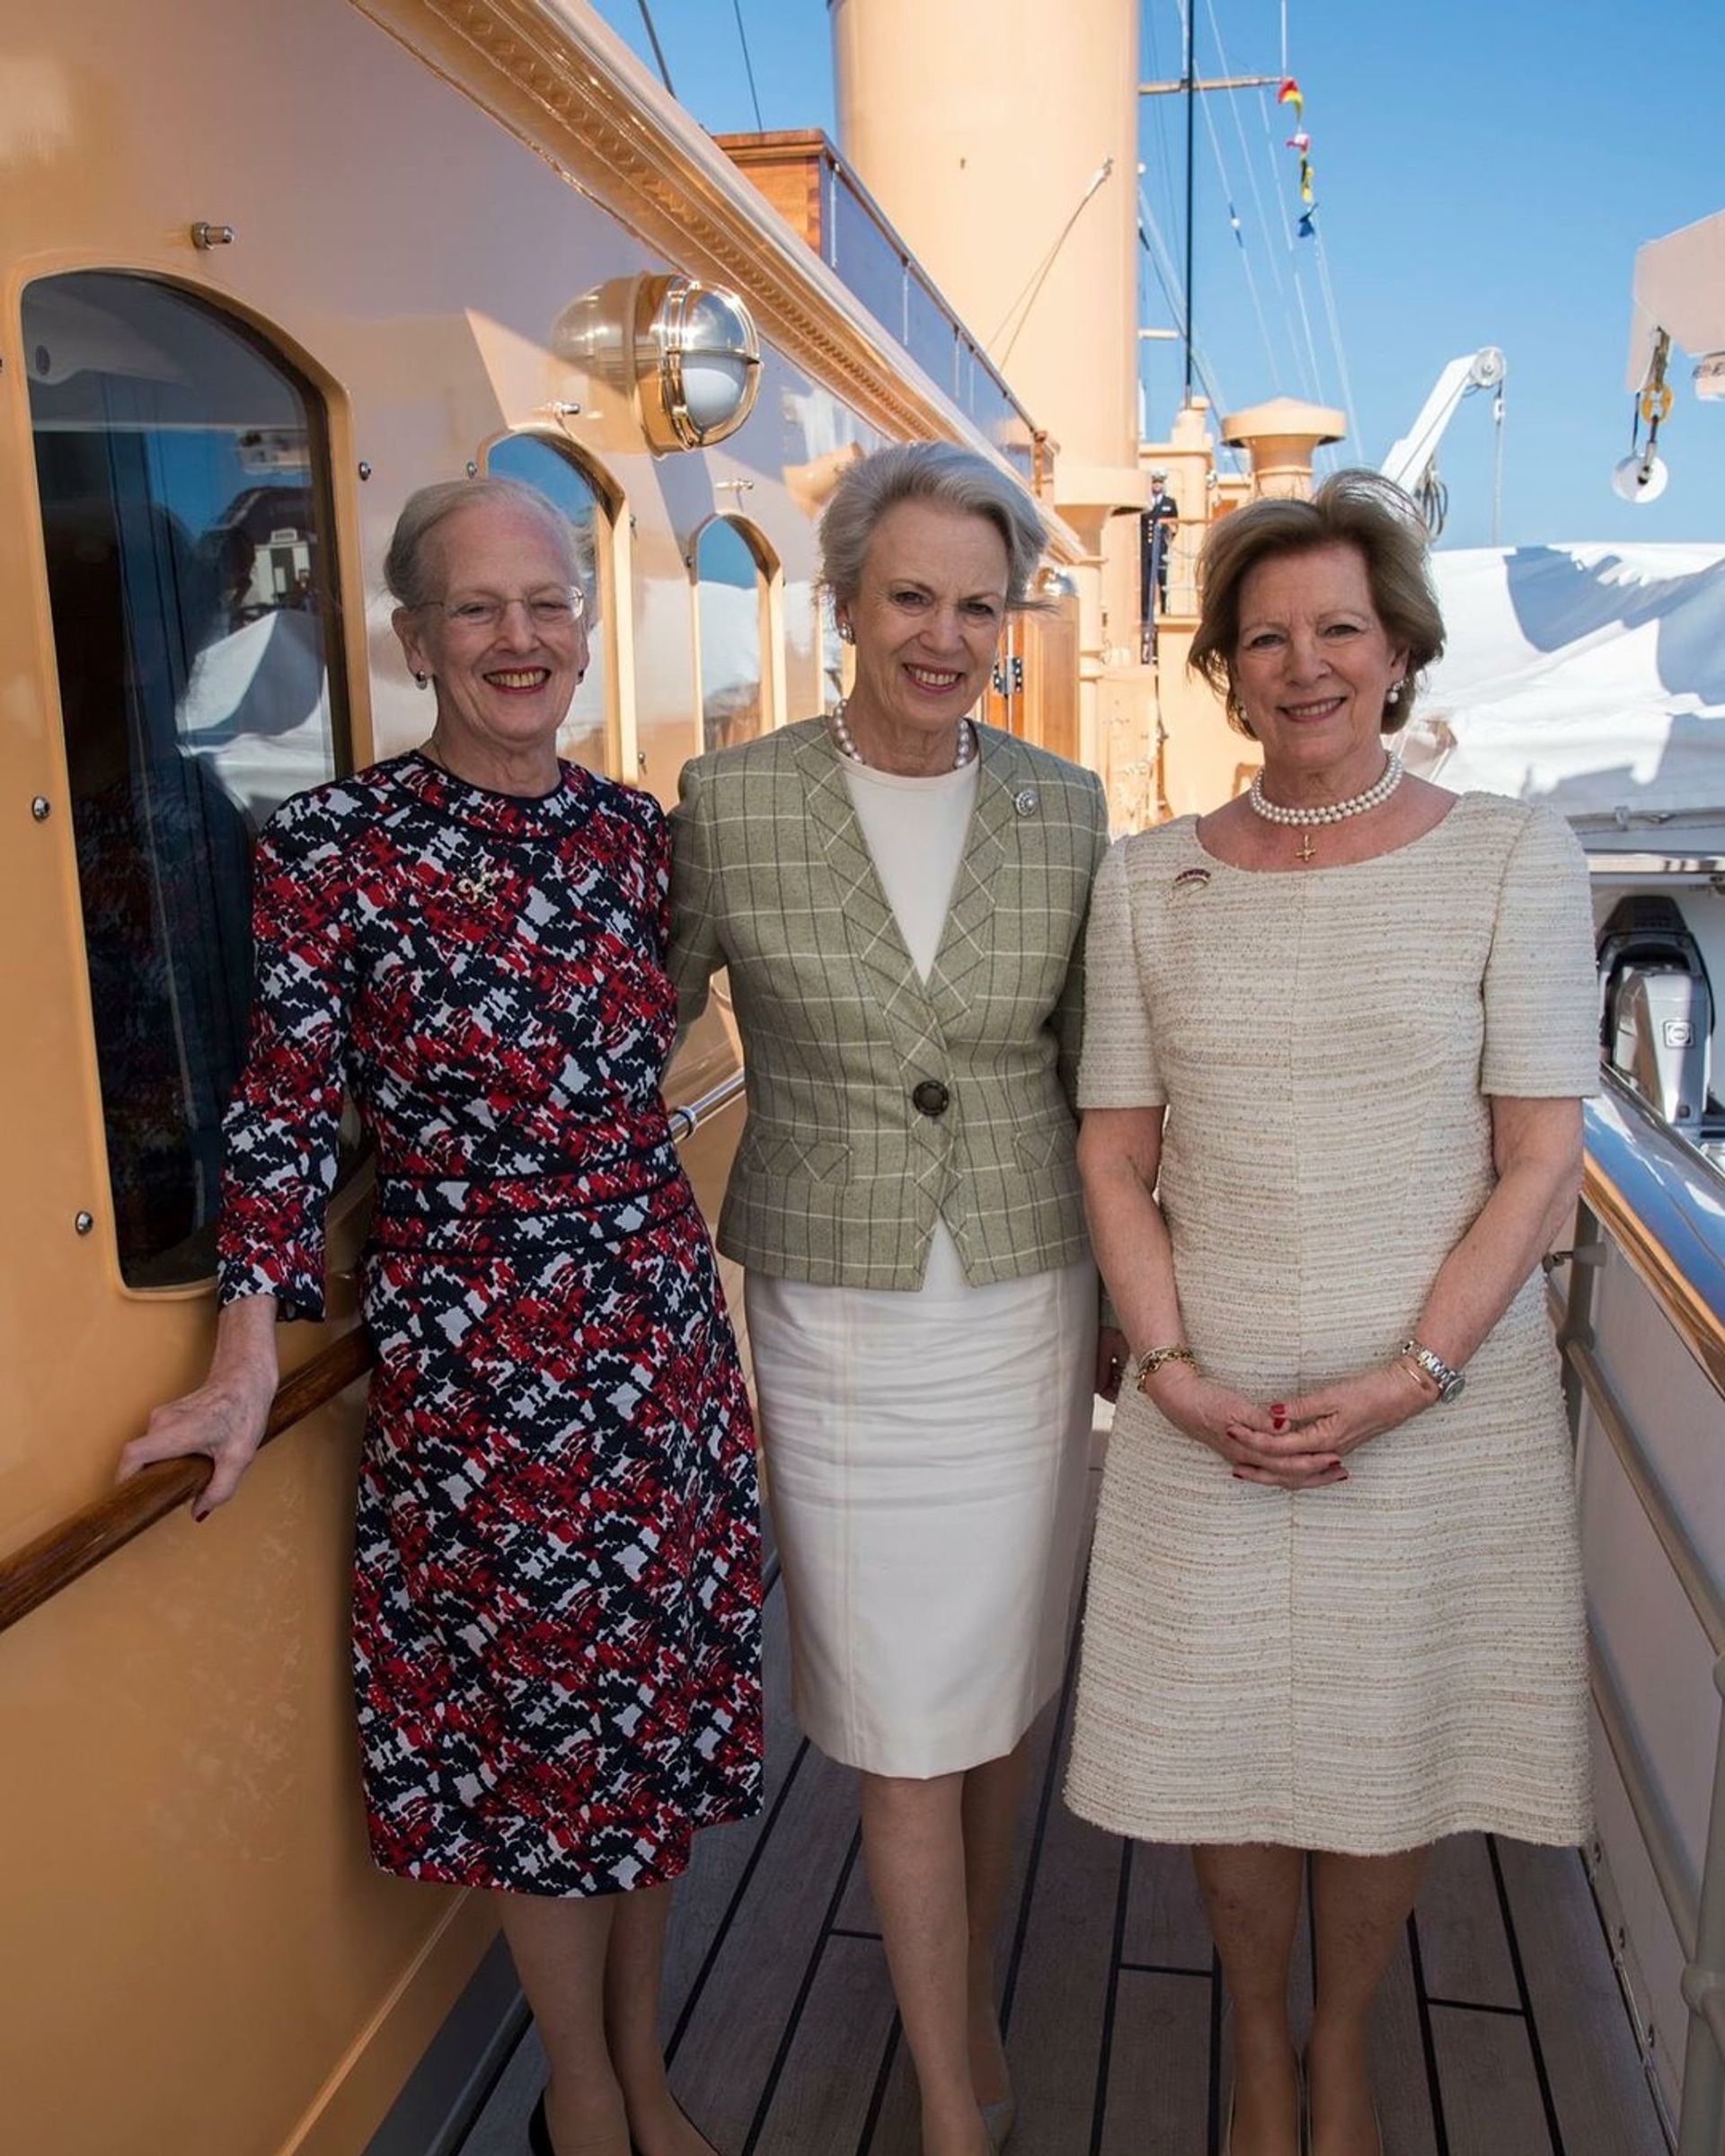 De drie zussen aan boord van het koninklijke schip Dannebrog in de zomer van 2018.